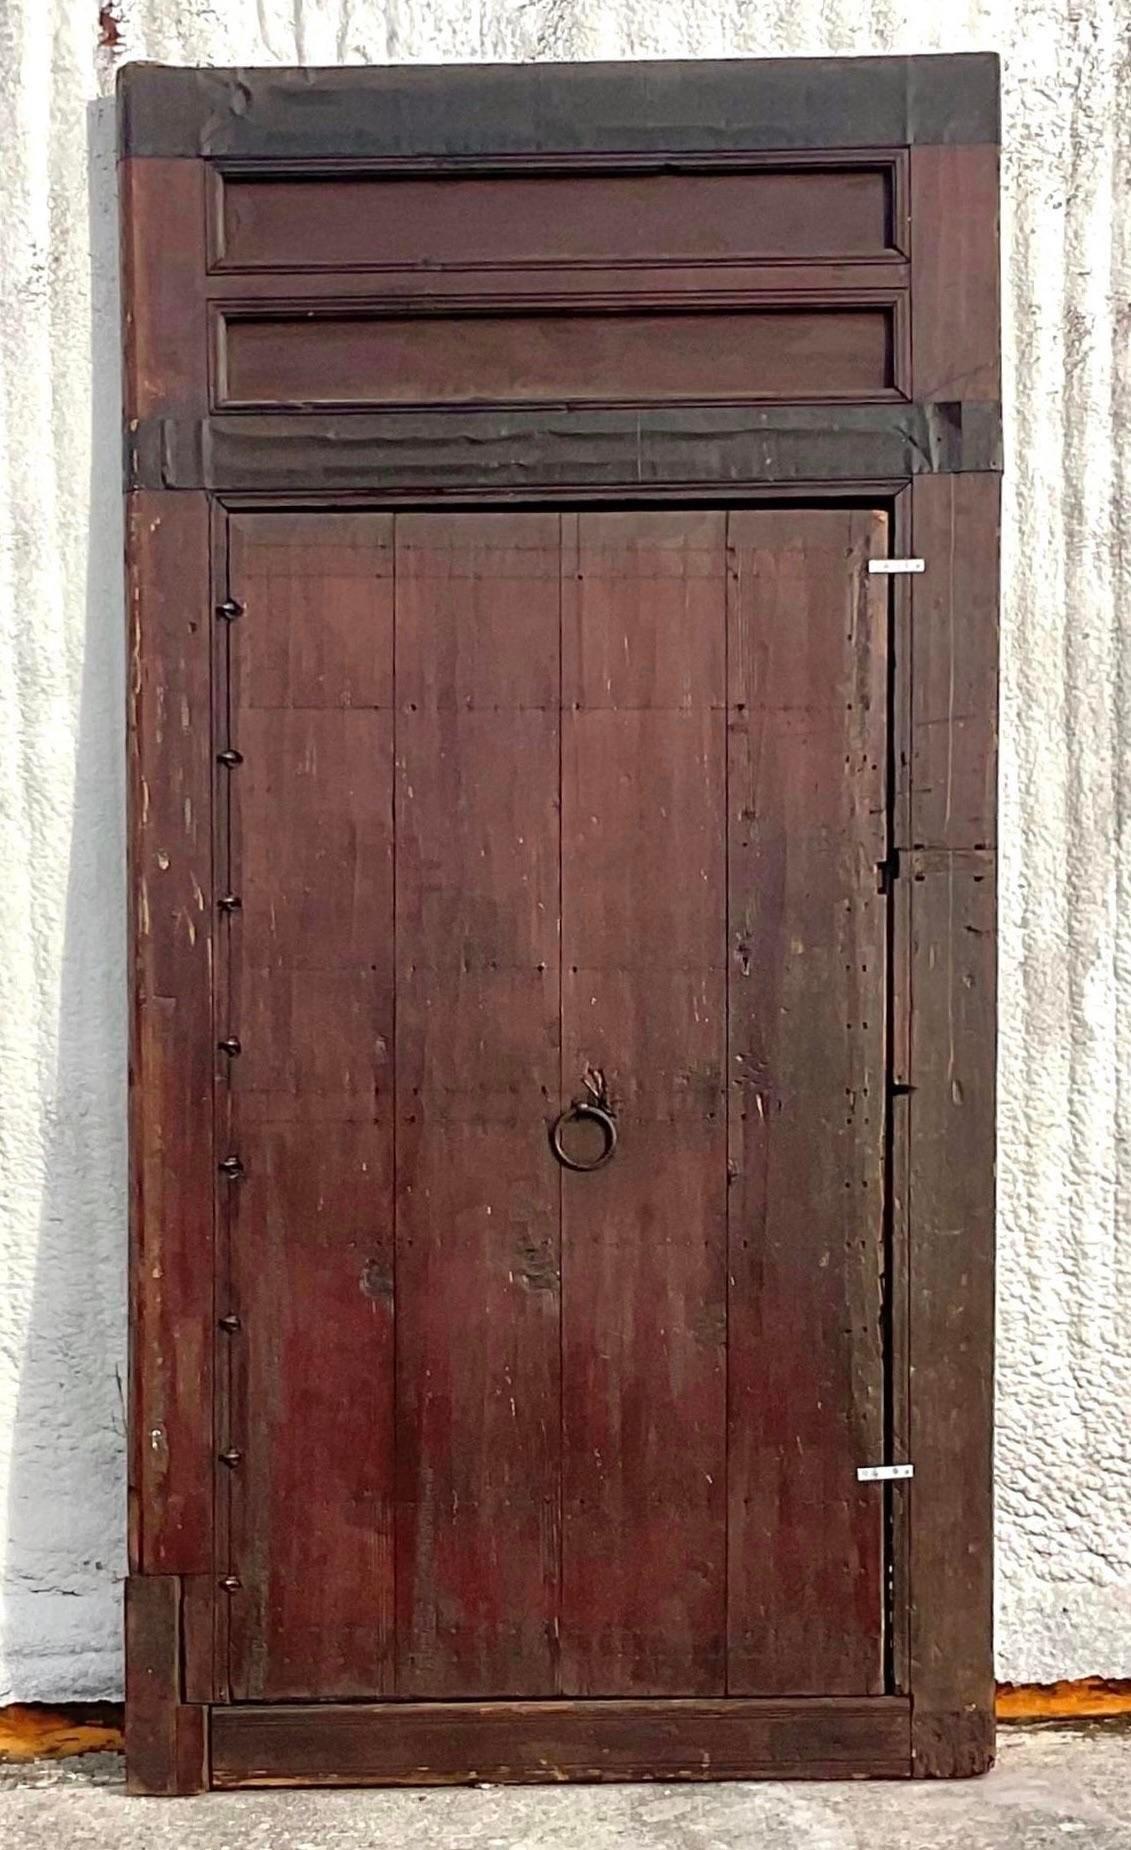 Verleihen Sie Ihrem Raum exotischen Charme mit unserer geschnitzten marokkanischen Vintage-Boho-Holztür mit Messingdetails. Dieses atemberaubende Möbelstück verbindet traditionelle marokkanische Handwerkskunst mit amerikanischem Bohème-Stil. Die